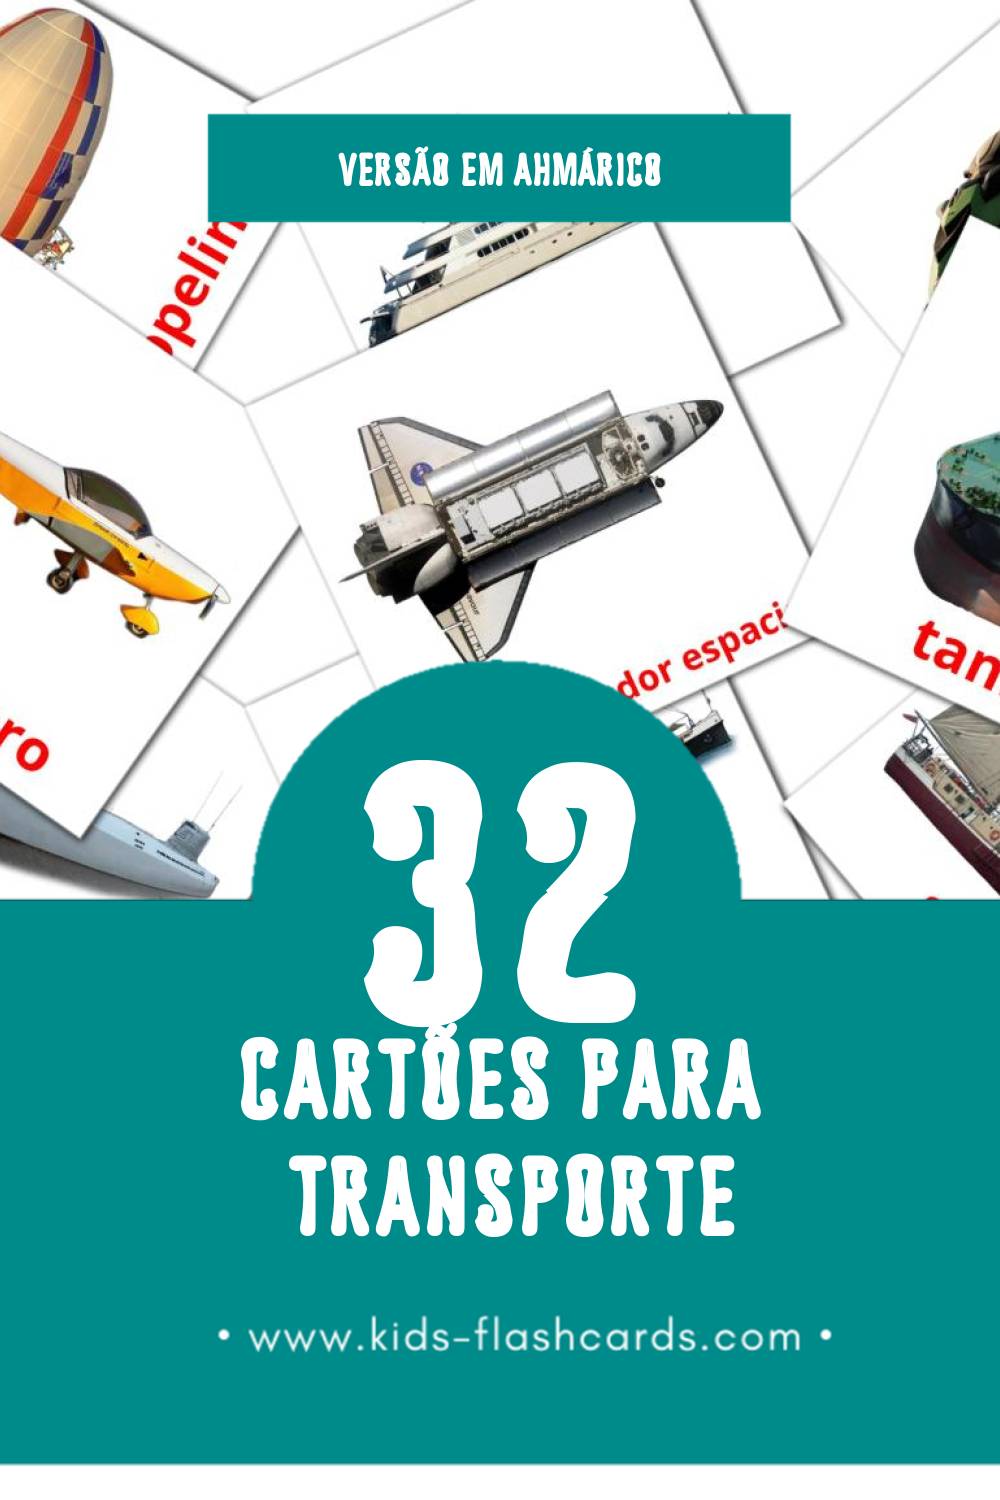 Flashcards de Transportes  Visuais para Toddlers (41 cartões em Ahmárico)